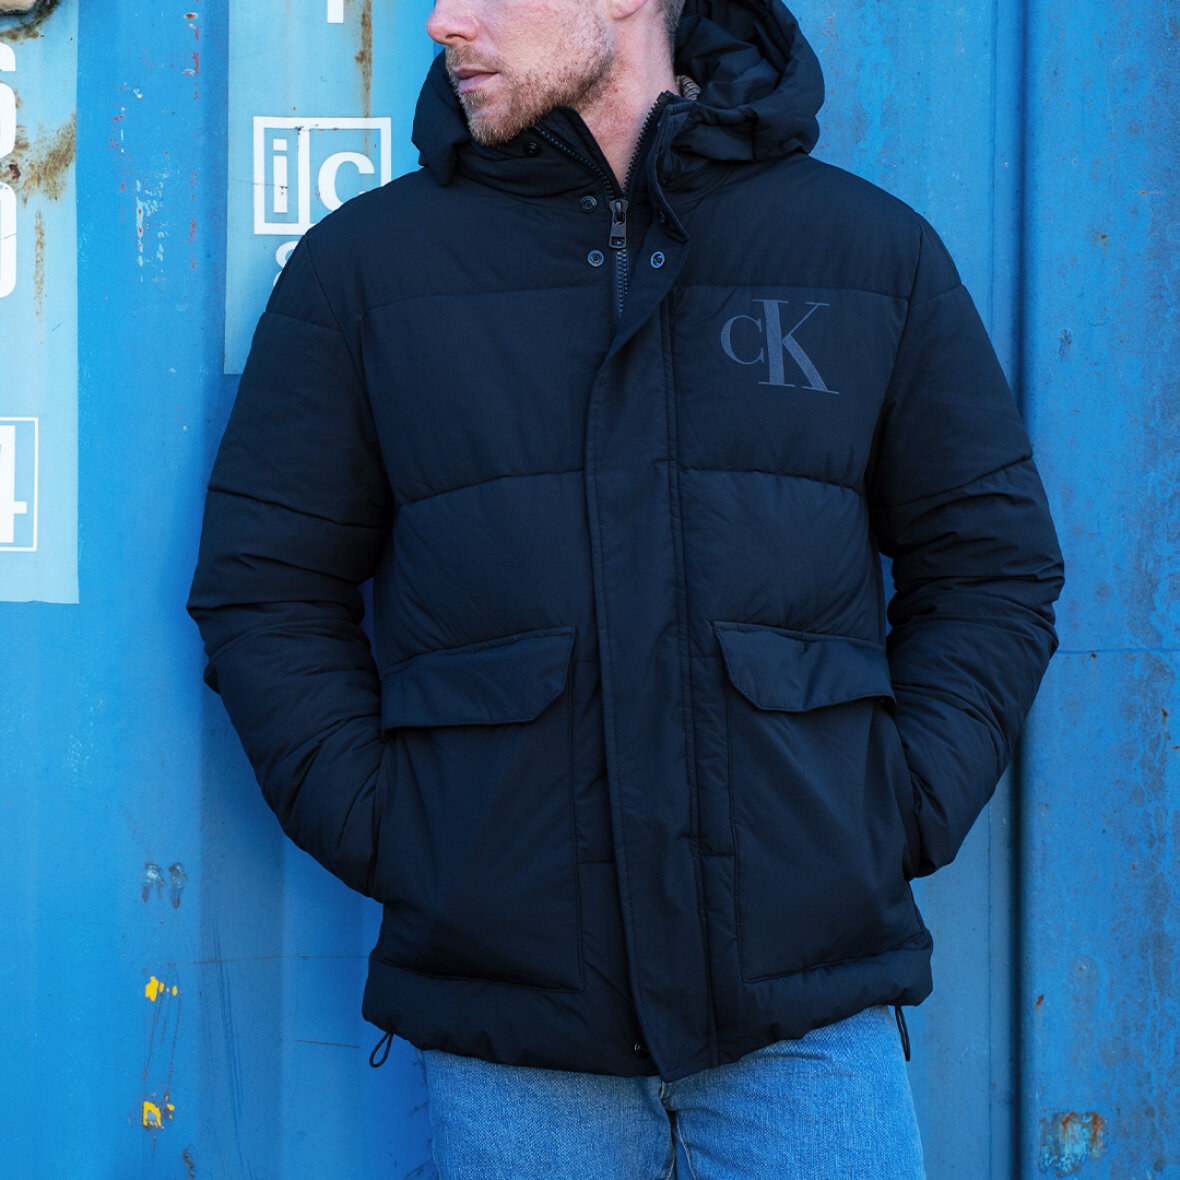 tvetydig Smadre Ekspression Ck eco jacket fra Calvin Klein - Køb nu, leveret i morgen!